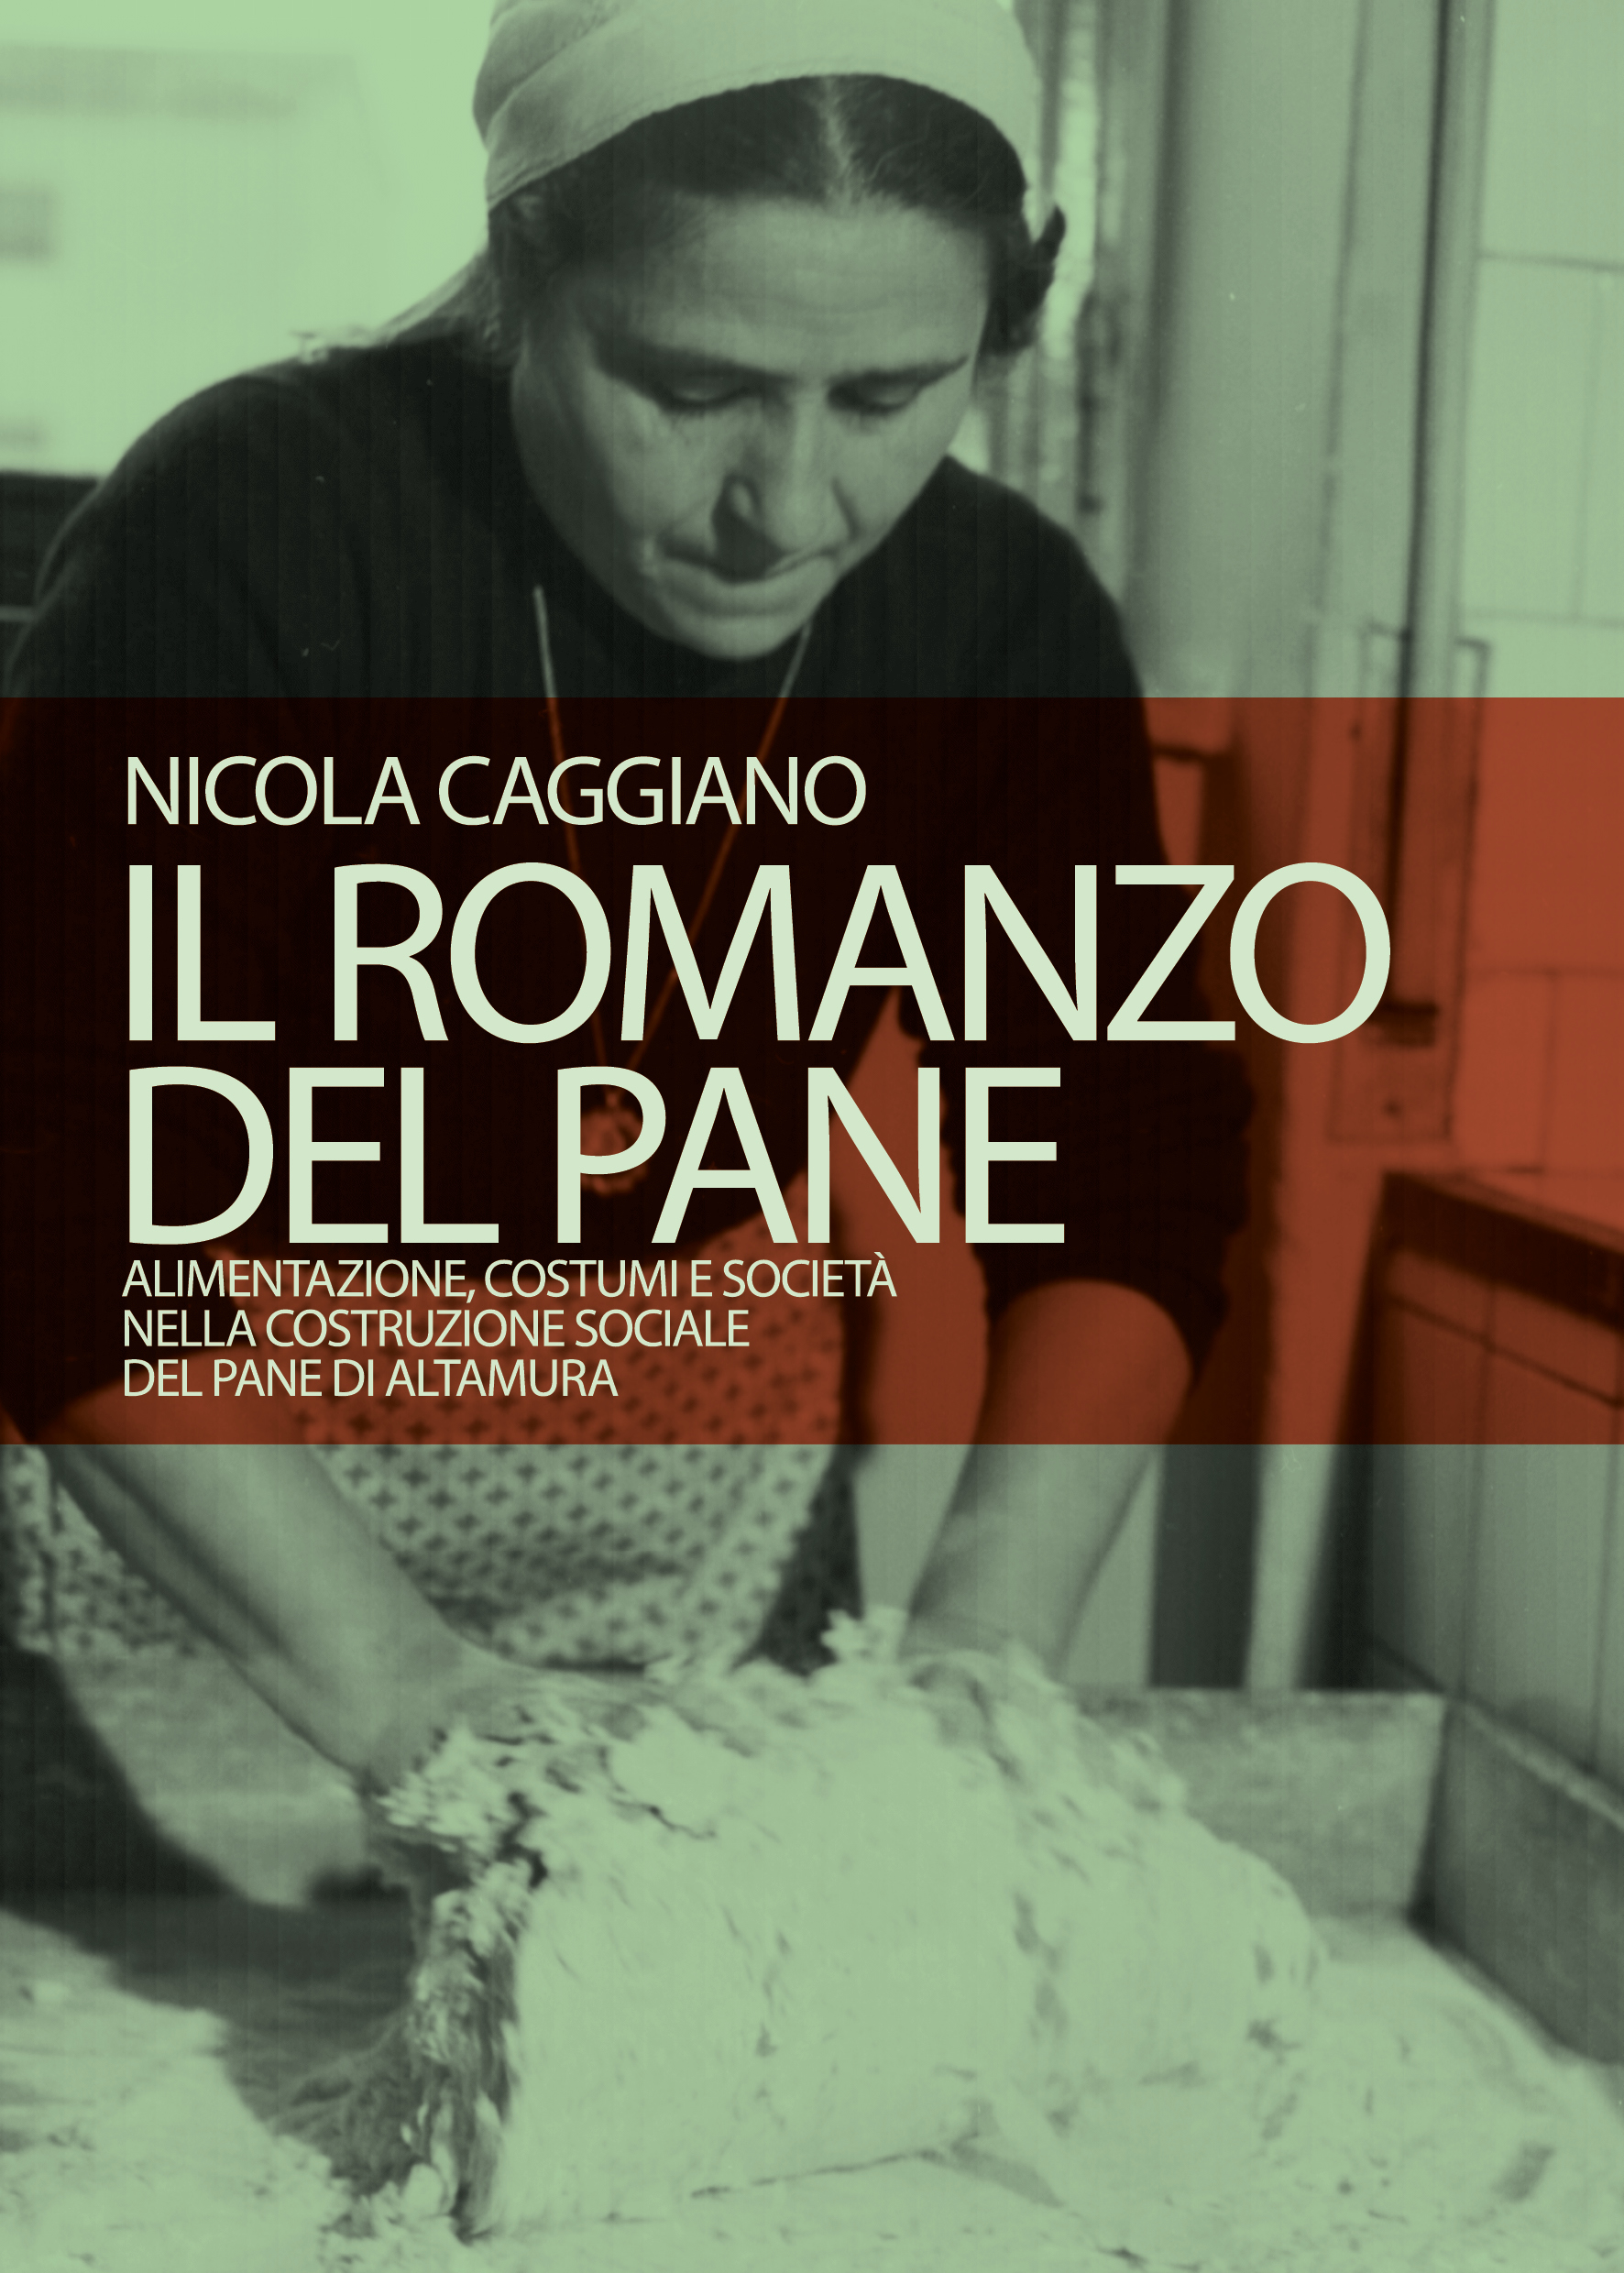 “Il romanzo del pane”, il 26 a Matera presentazione del volume postumo di Nicola Caggiano